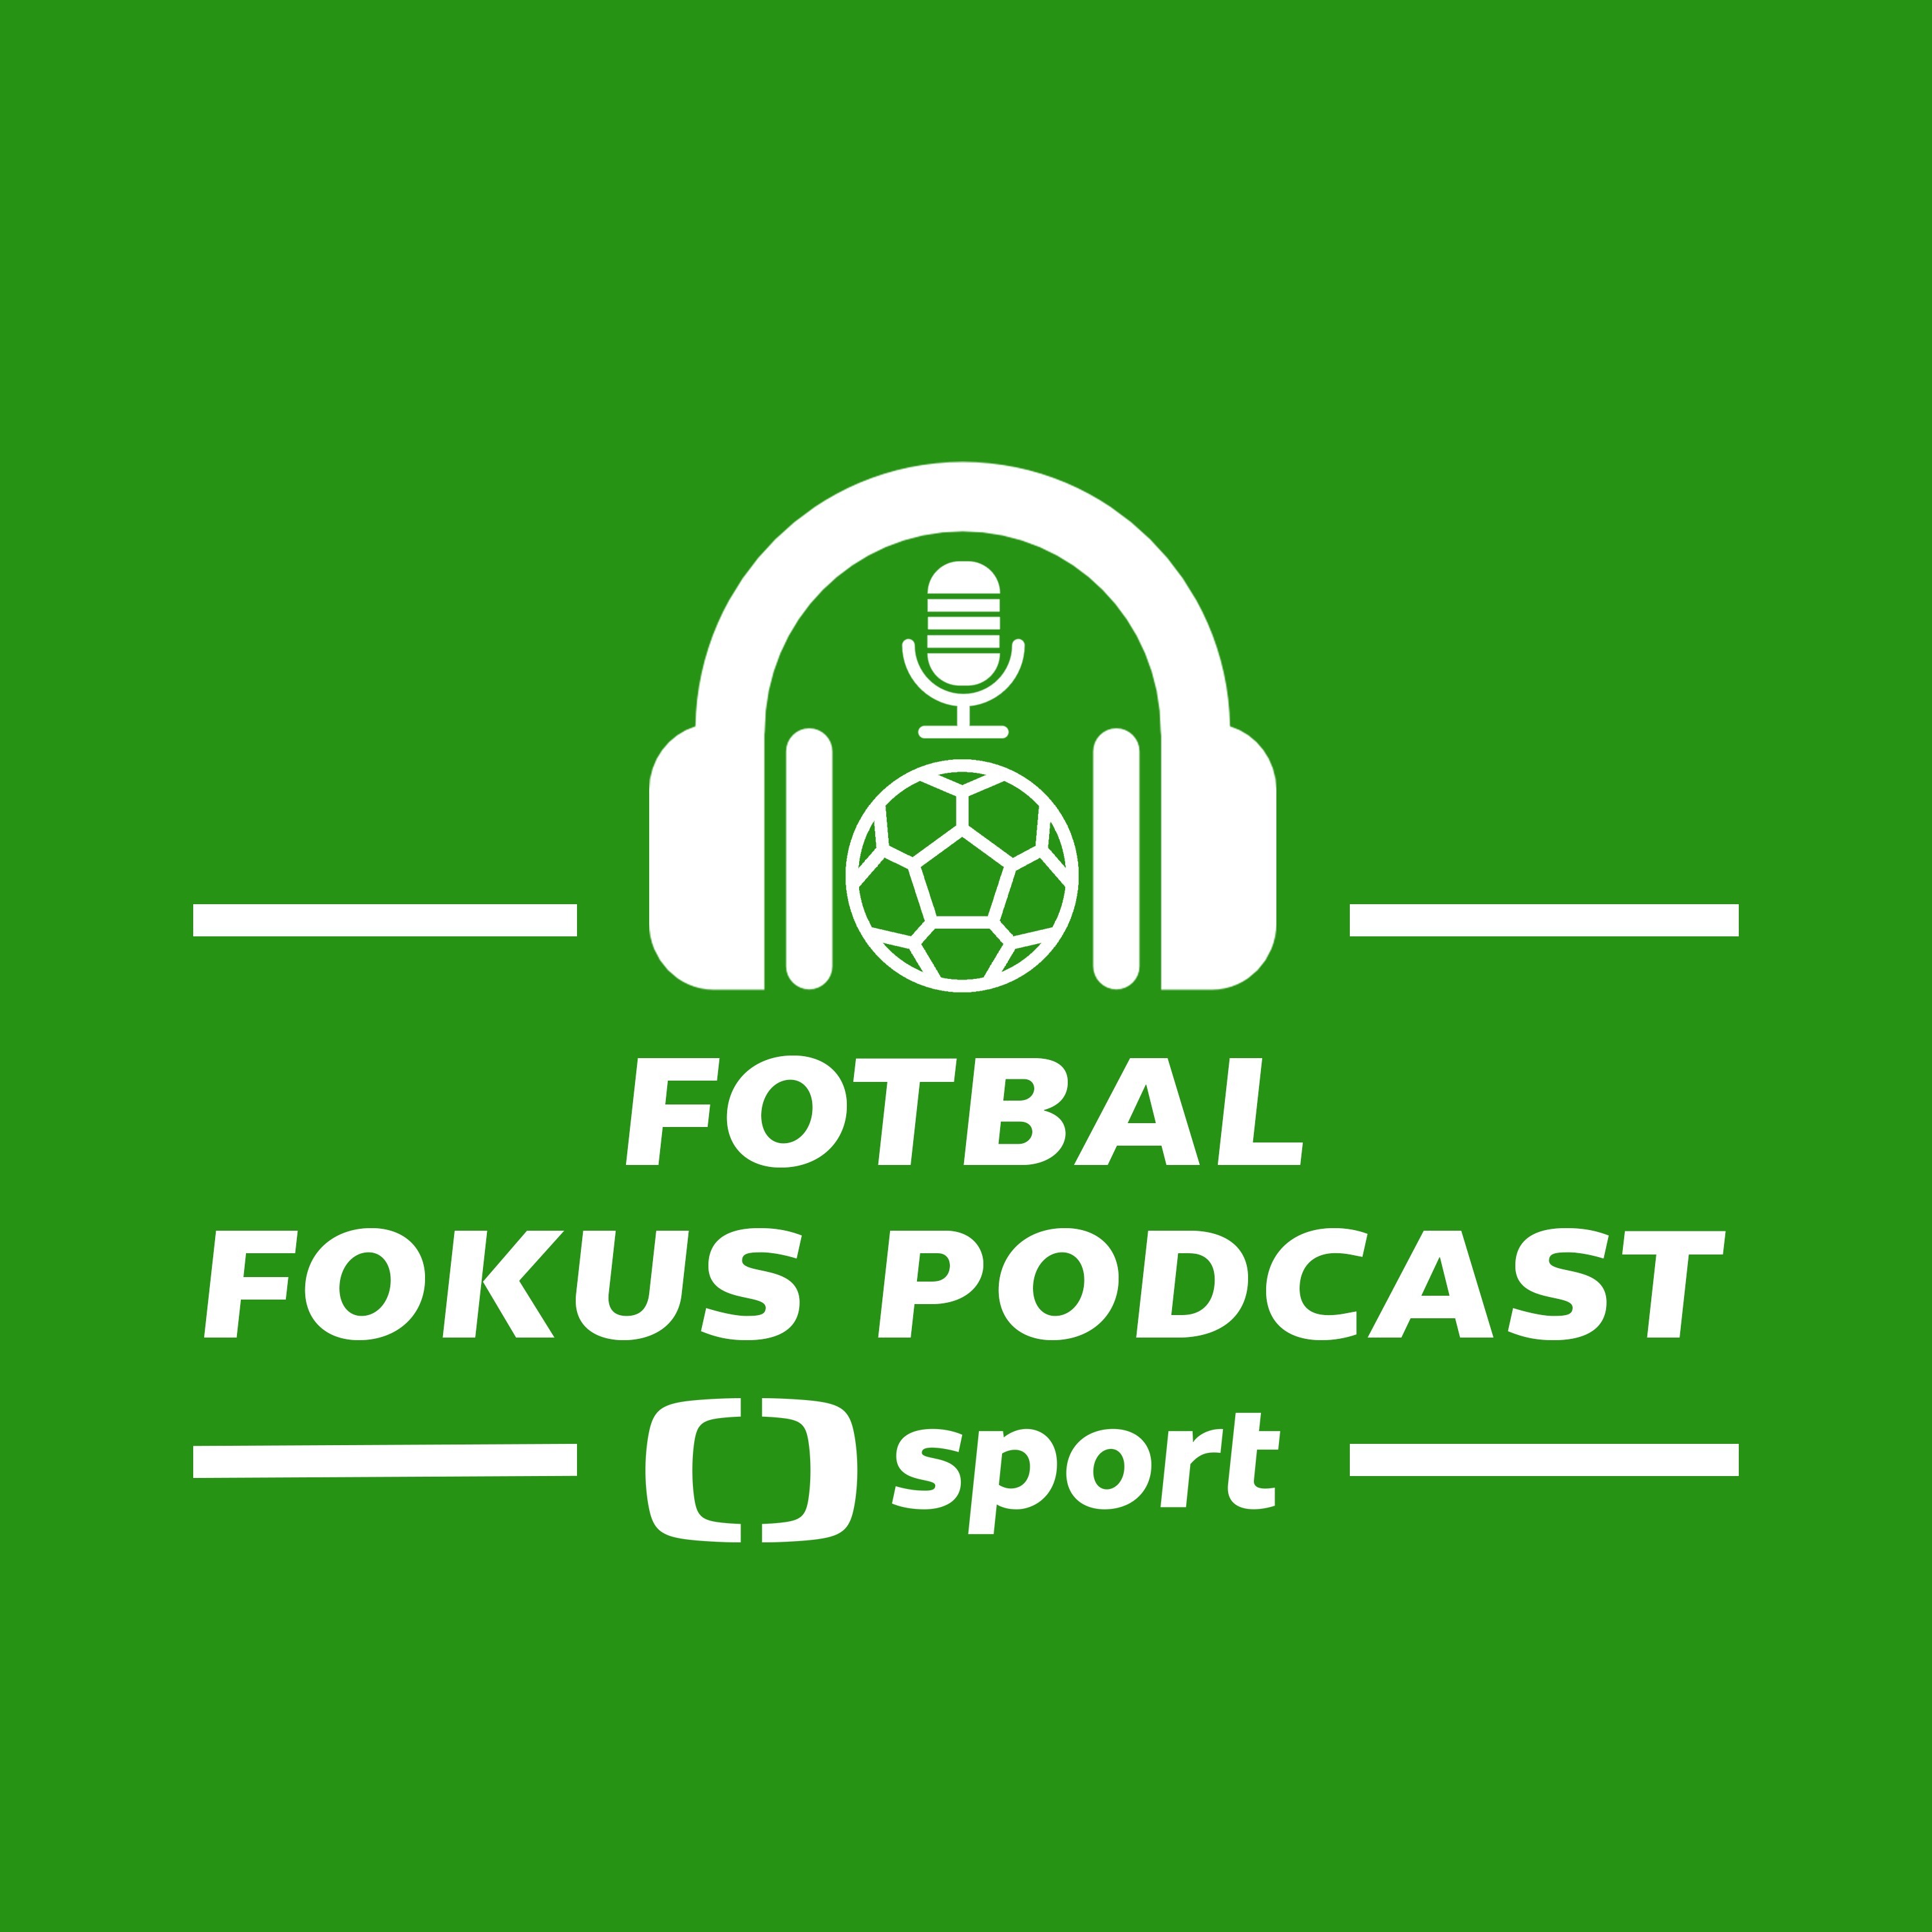 Fotbal fokus podcast: Přijal by Vrba nabídku Sparty a kdo je pro Letenské ideální kouč?